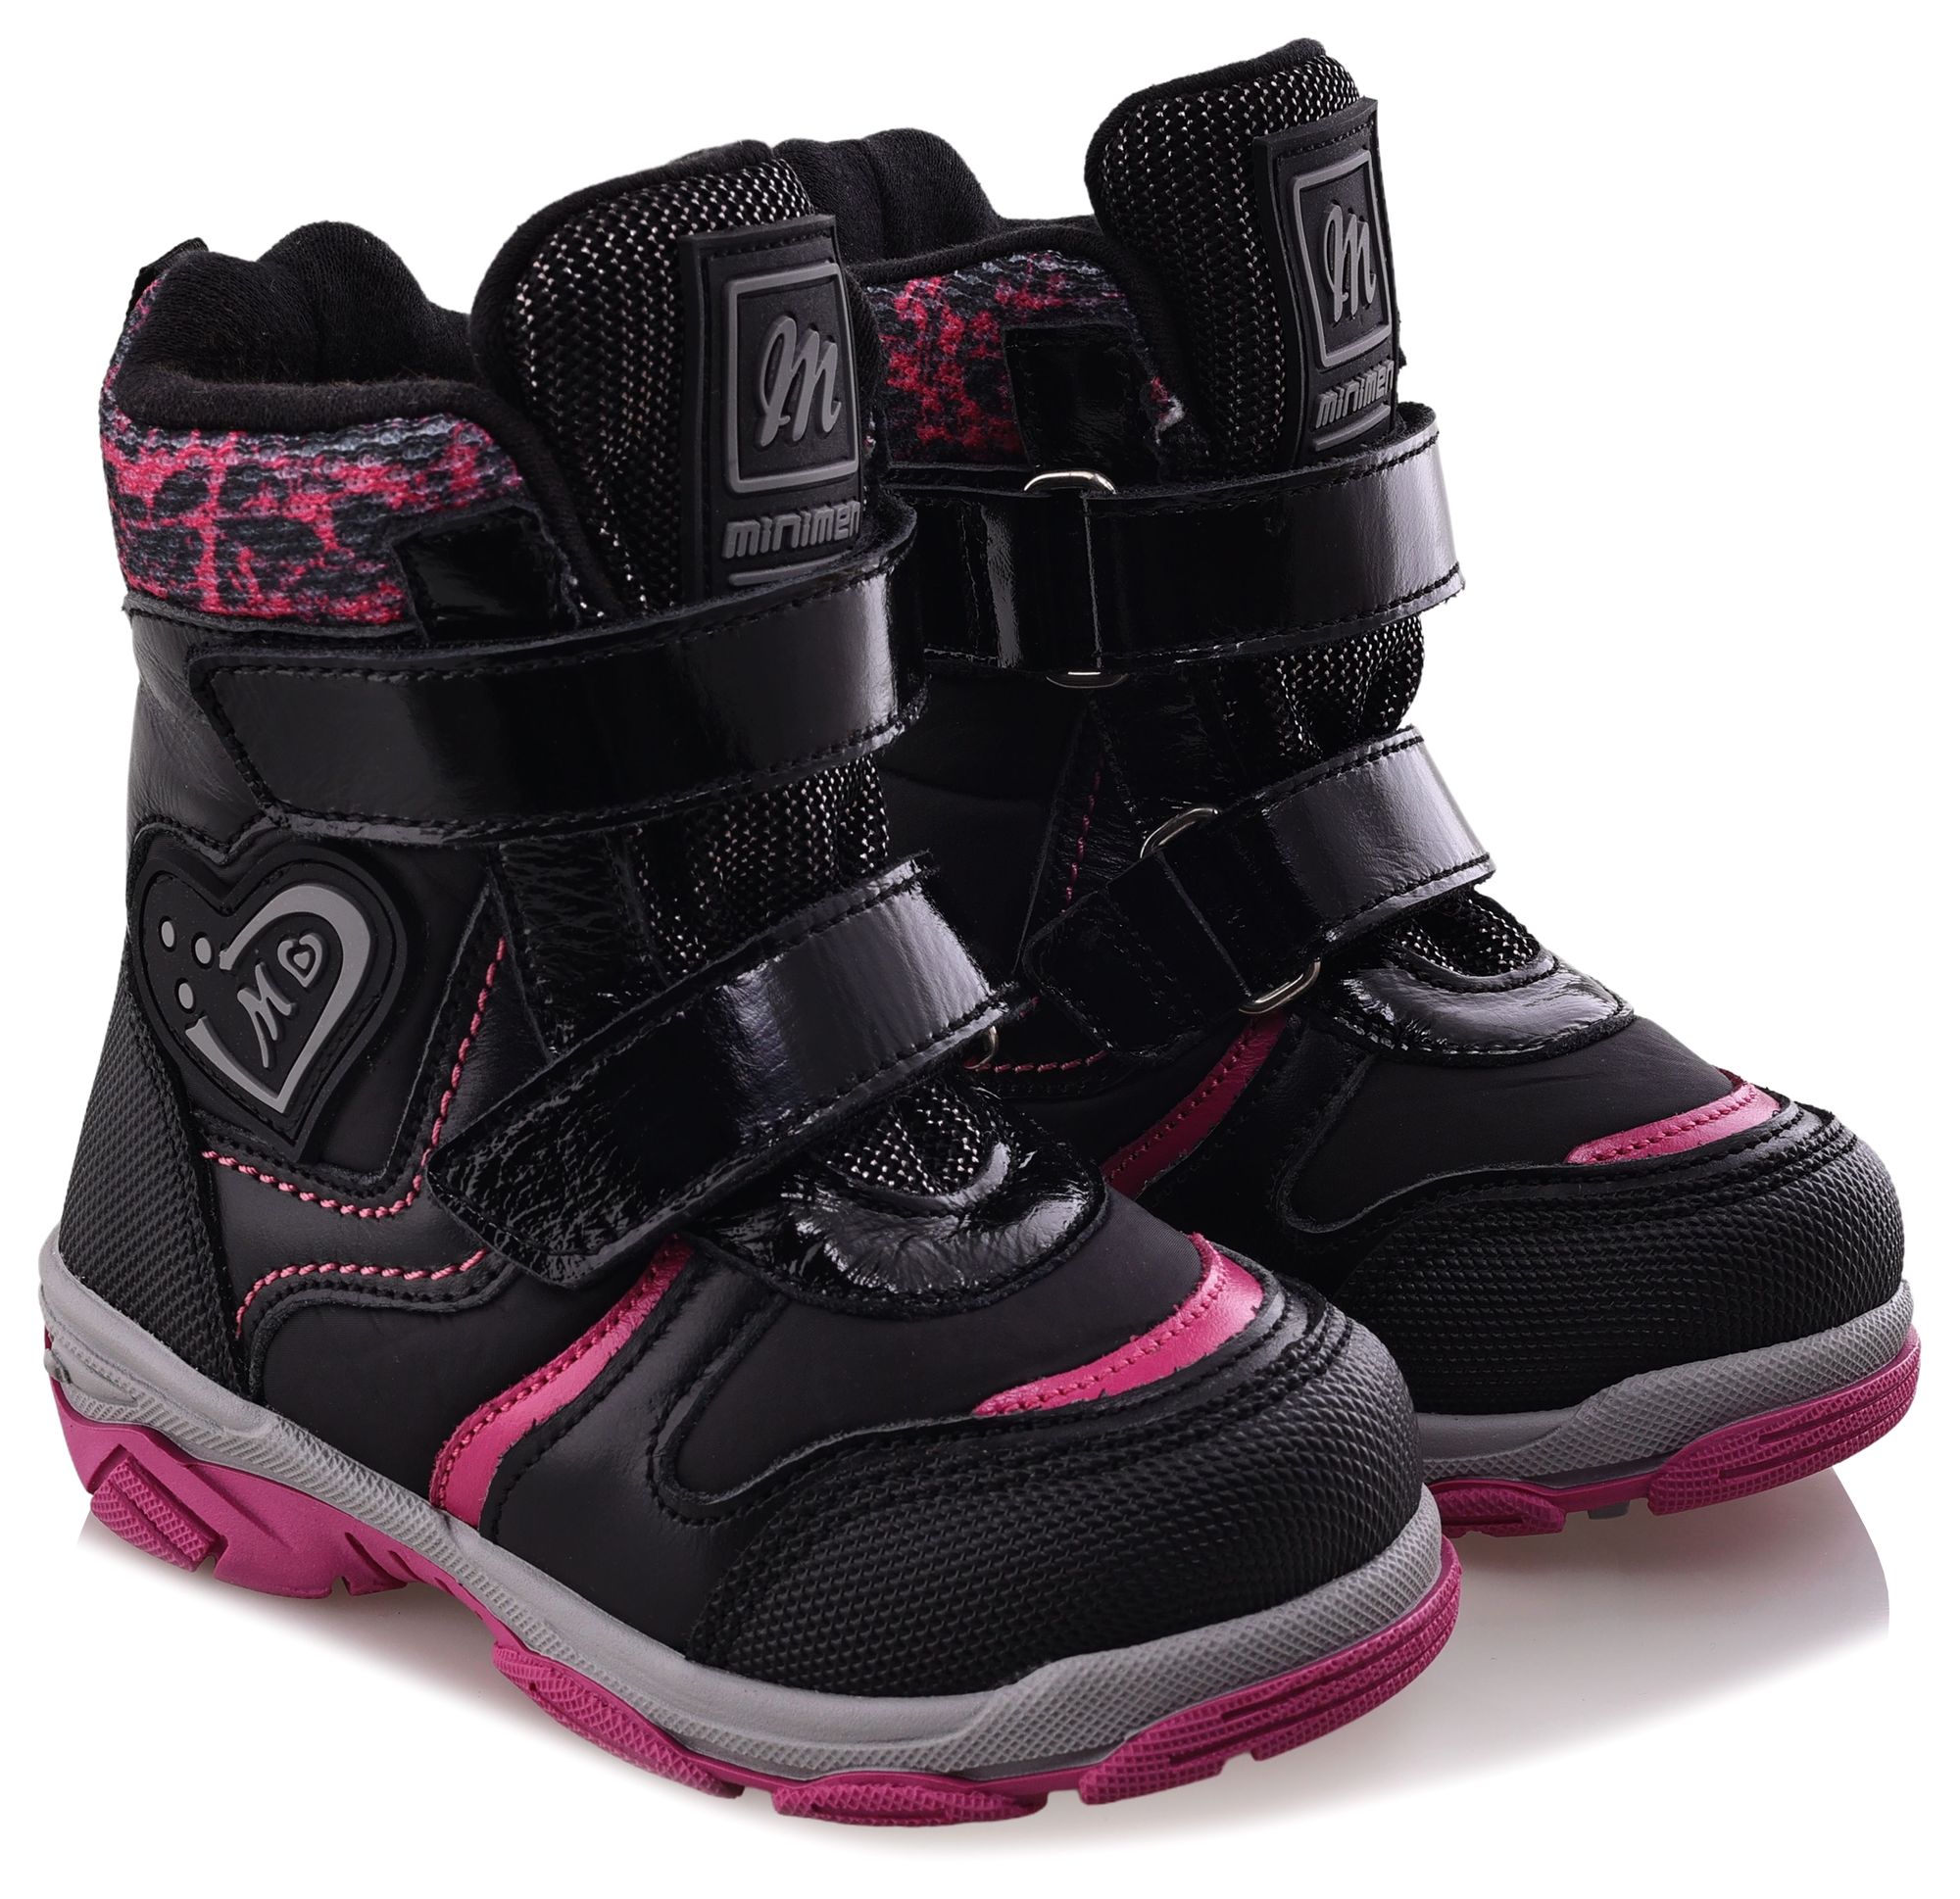 Ботинки Minimen для девочек, чёрные, размер 35, 2656-54-23B-01 ботинки minimen для девочек розовые размер 27 2656 53 23b 02